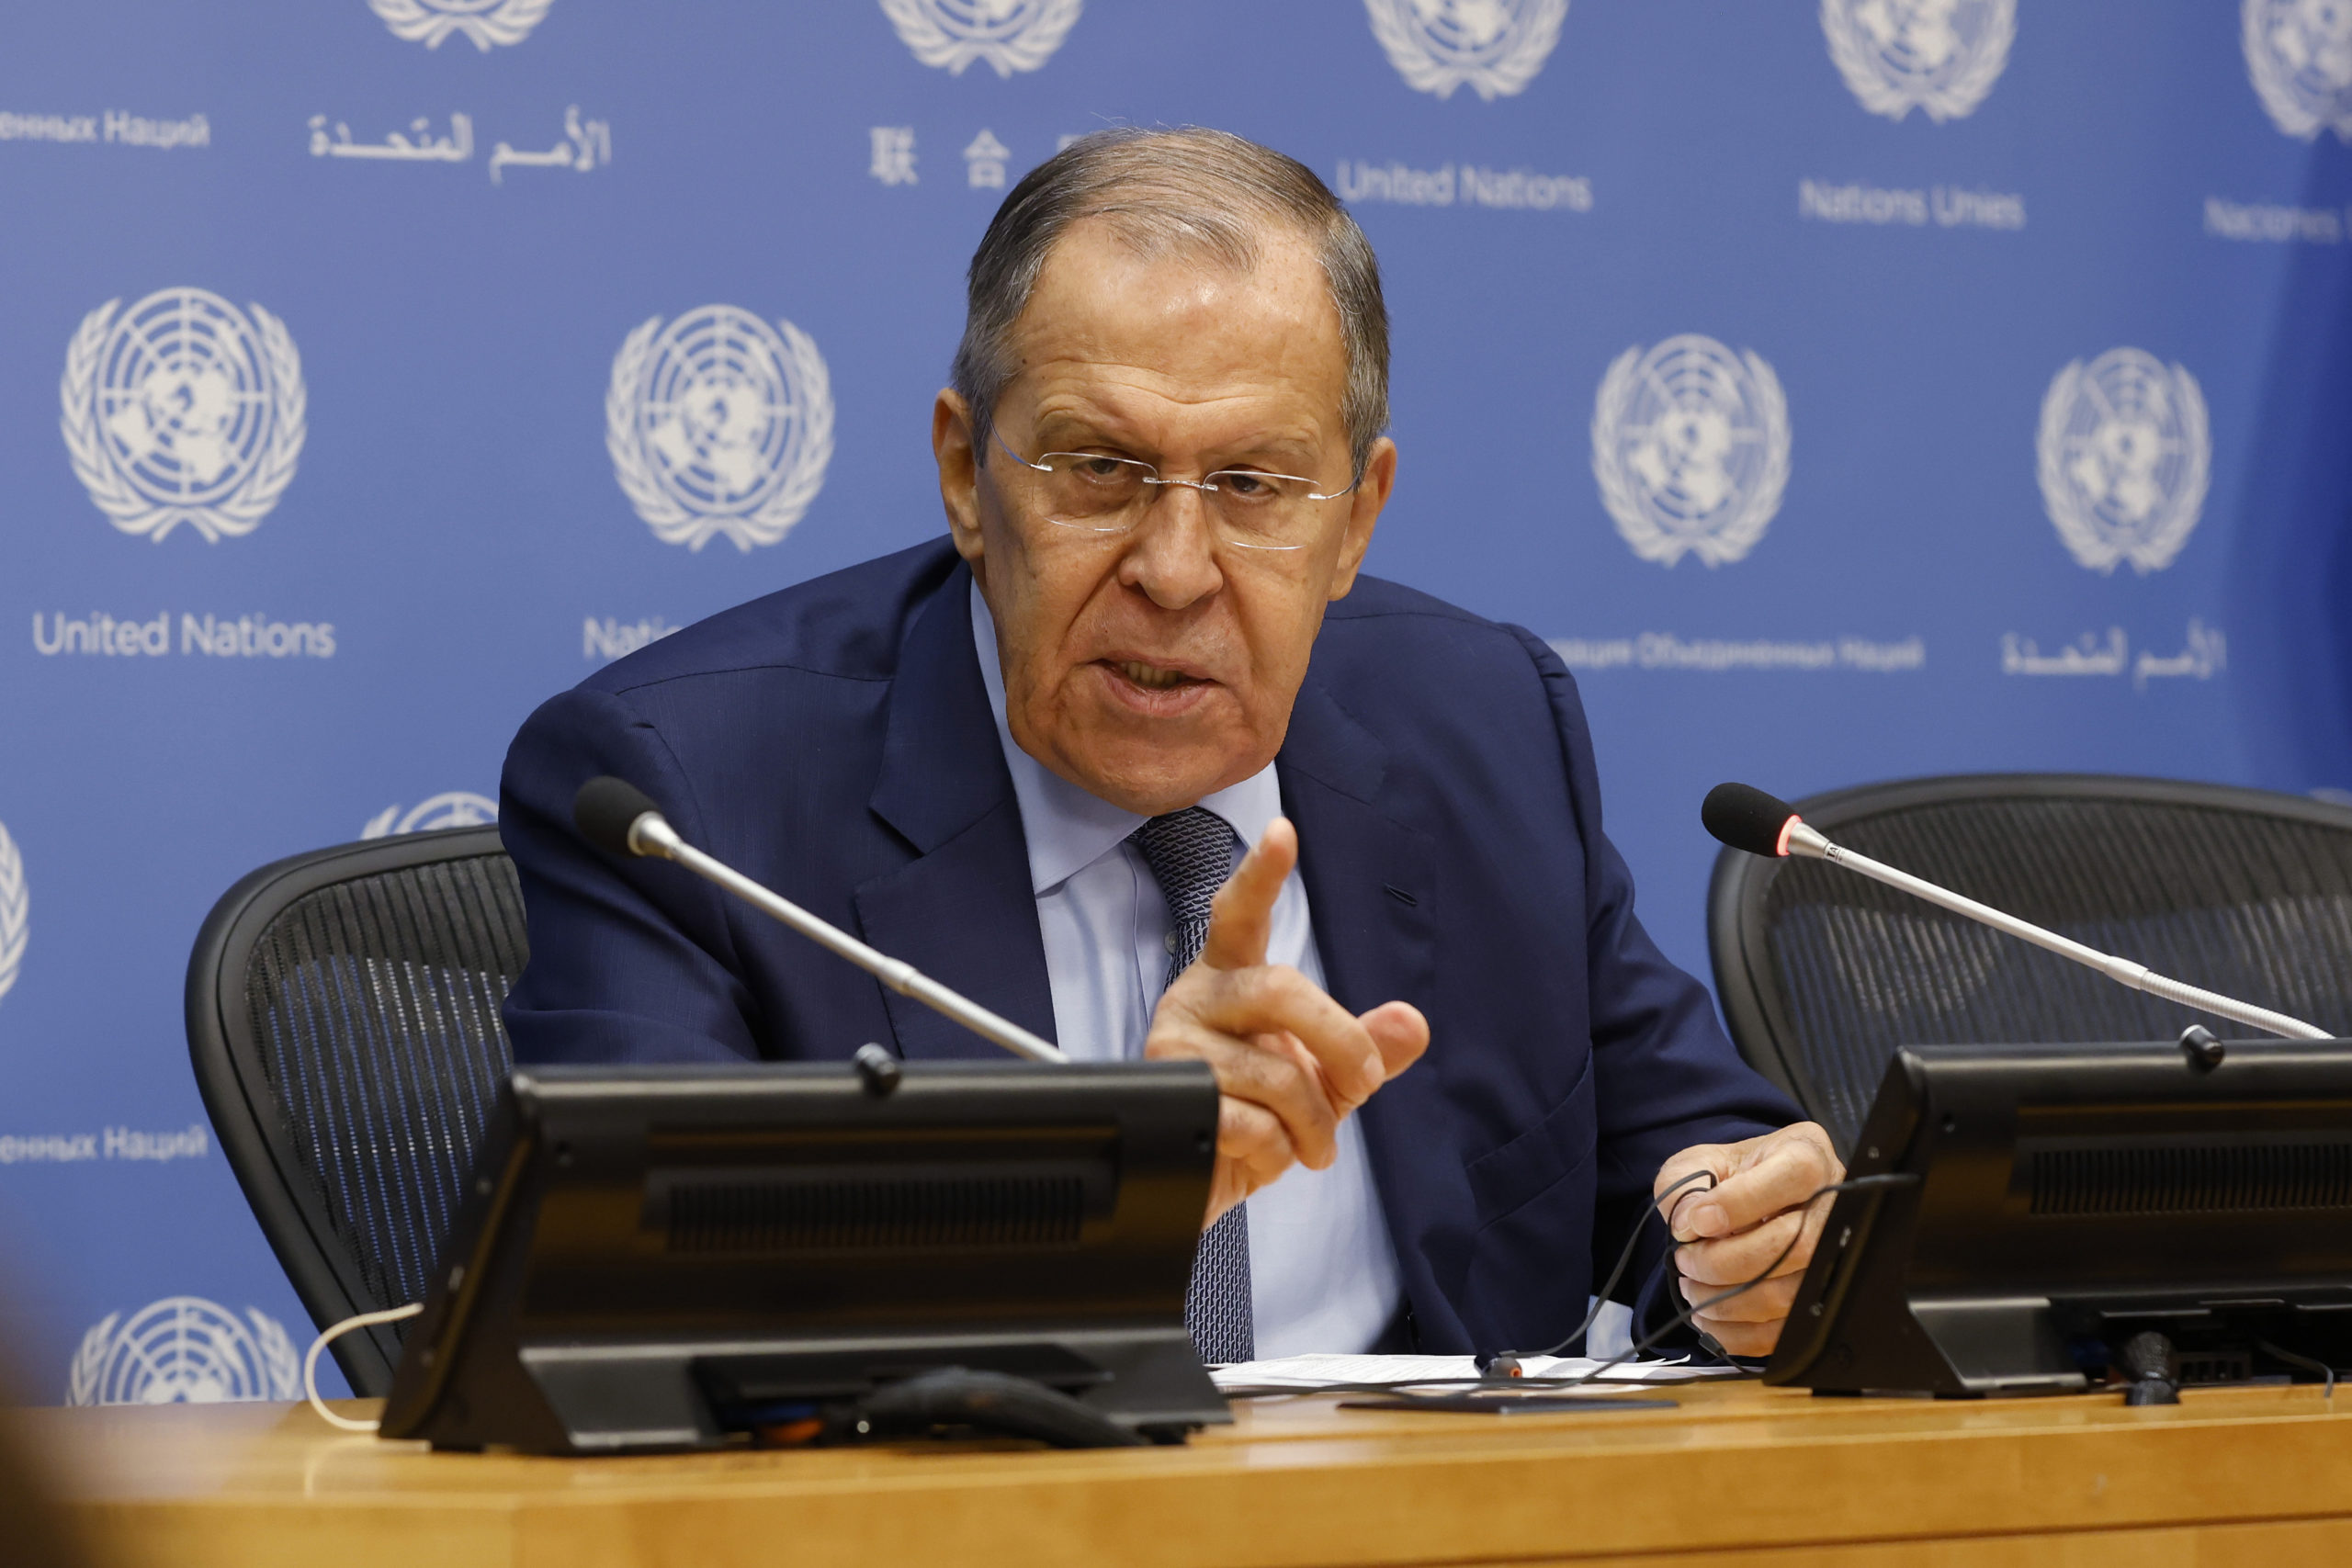 Λαβρόφ: Ανοικτή σε συνομιλίες με την Δύση η Μόσχα, αλλά δεν έχουμε δεχτεί σοβαρές προτάσεις για επαφή